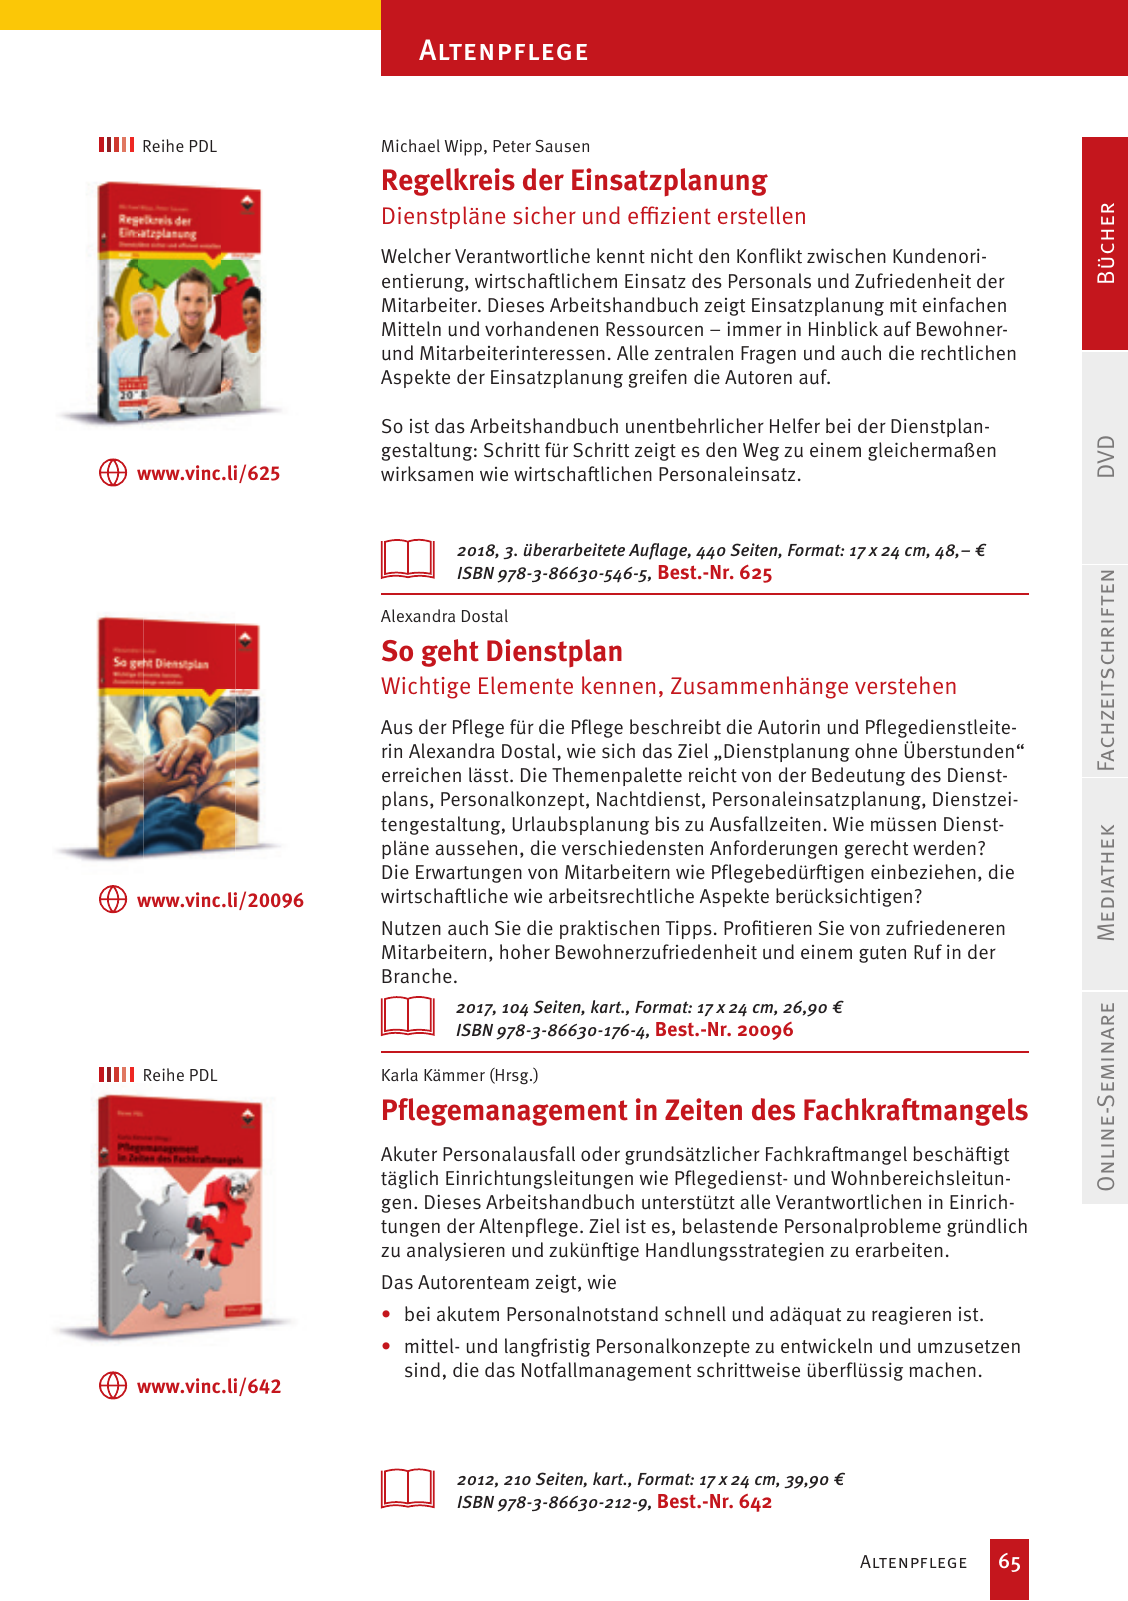 Vorschau Vincentz Verlagsprogramm 2020 Seite 65